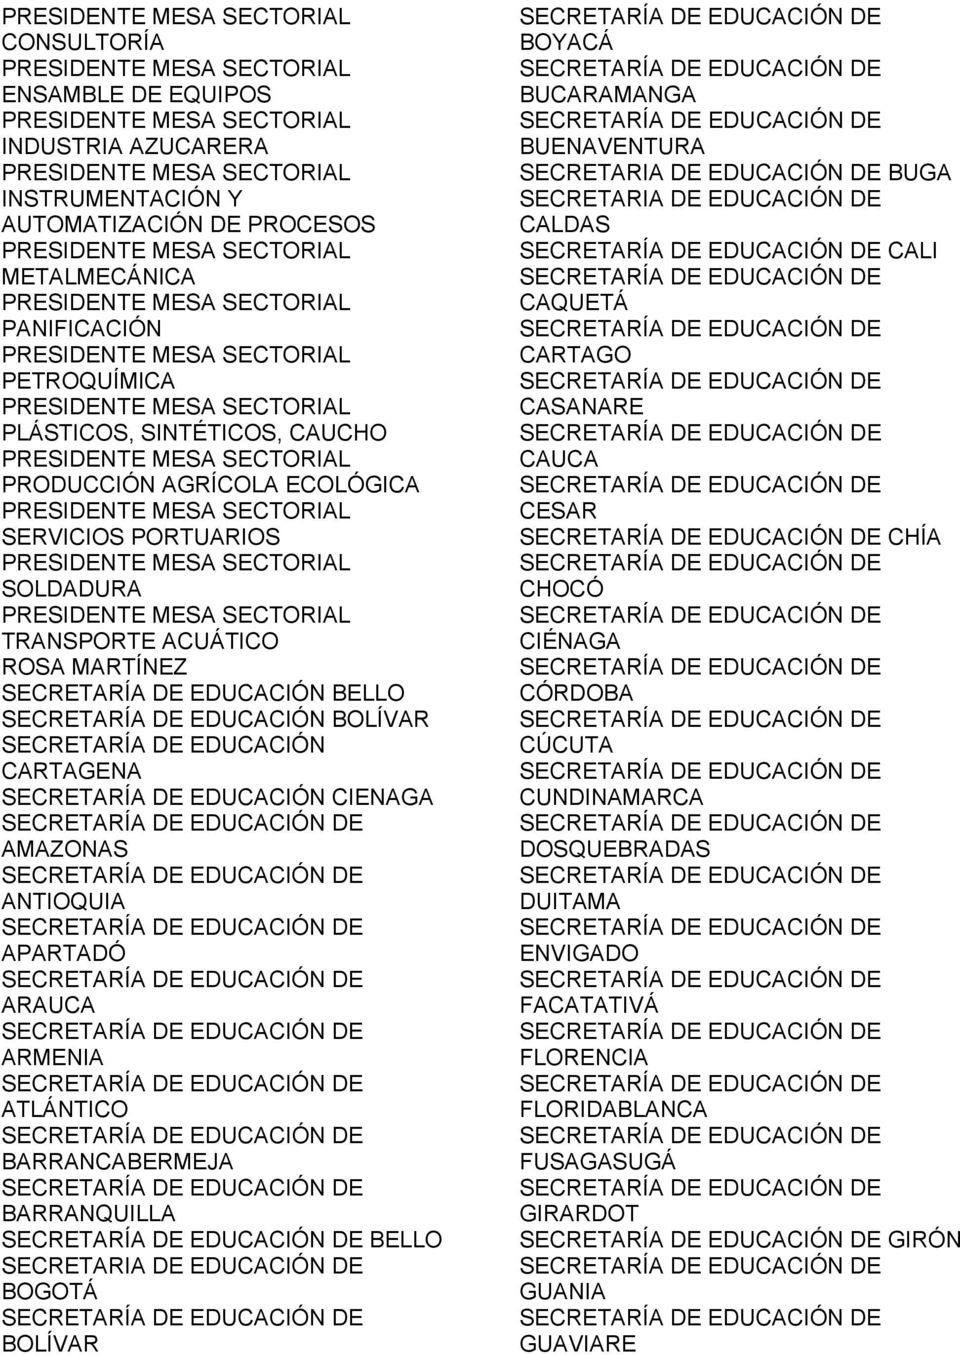 AMAZONAS ANTIOQUIA APARTADÓ ARAUCA ARMENIA ATLÁNTICO BARRANCABERMEJA BARRANQUILLA BELLO SECRETARIA DE EDUCACIÓN DE BOGOTÁ BOLÍVAR BOYACÁ BUCARAMANGA BUENAVENTURA SECRETARIA DE EDUCACIÓN DE BUGA